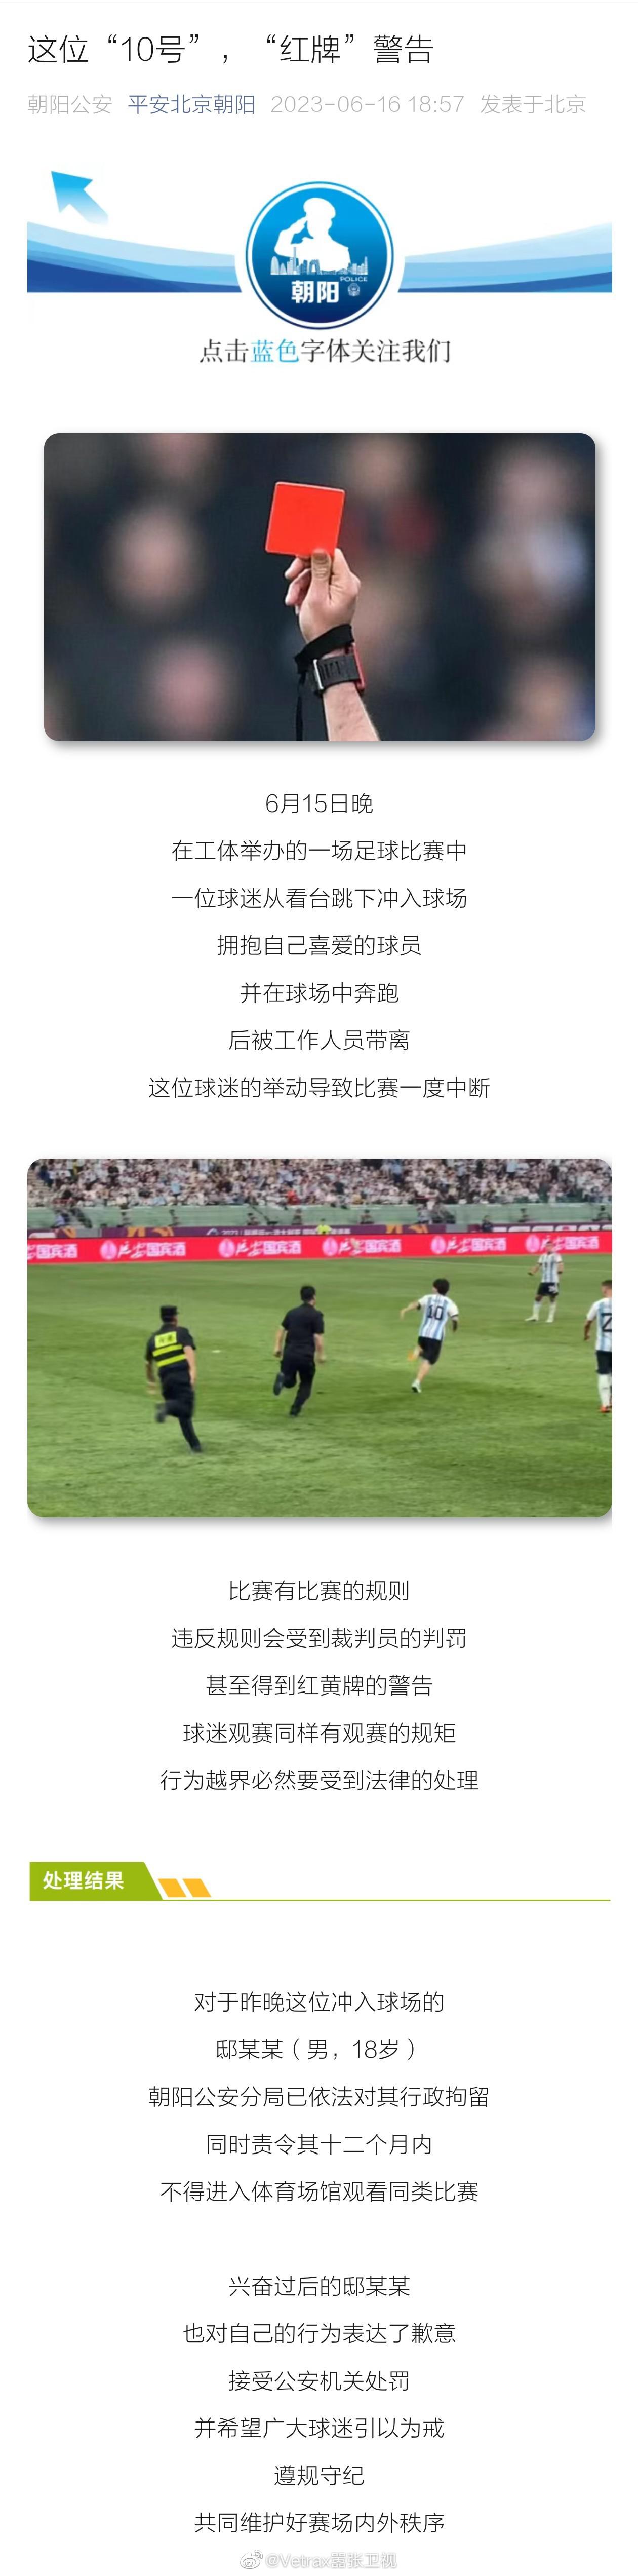 昨晚球迷闯入现场拥抱梅西的后续来了：平安北京朝阳通报，  6月15日晚，在工体举